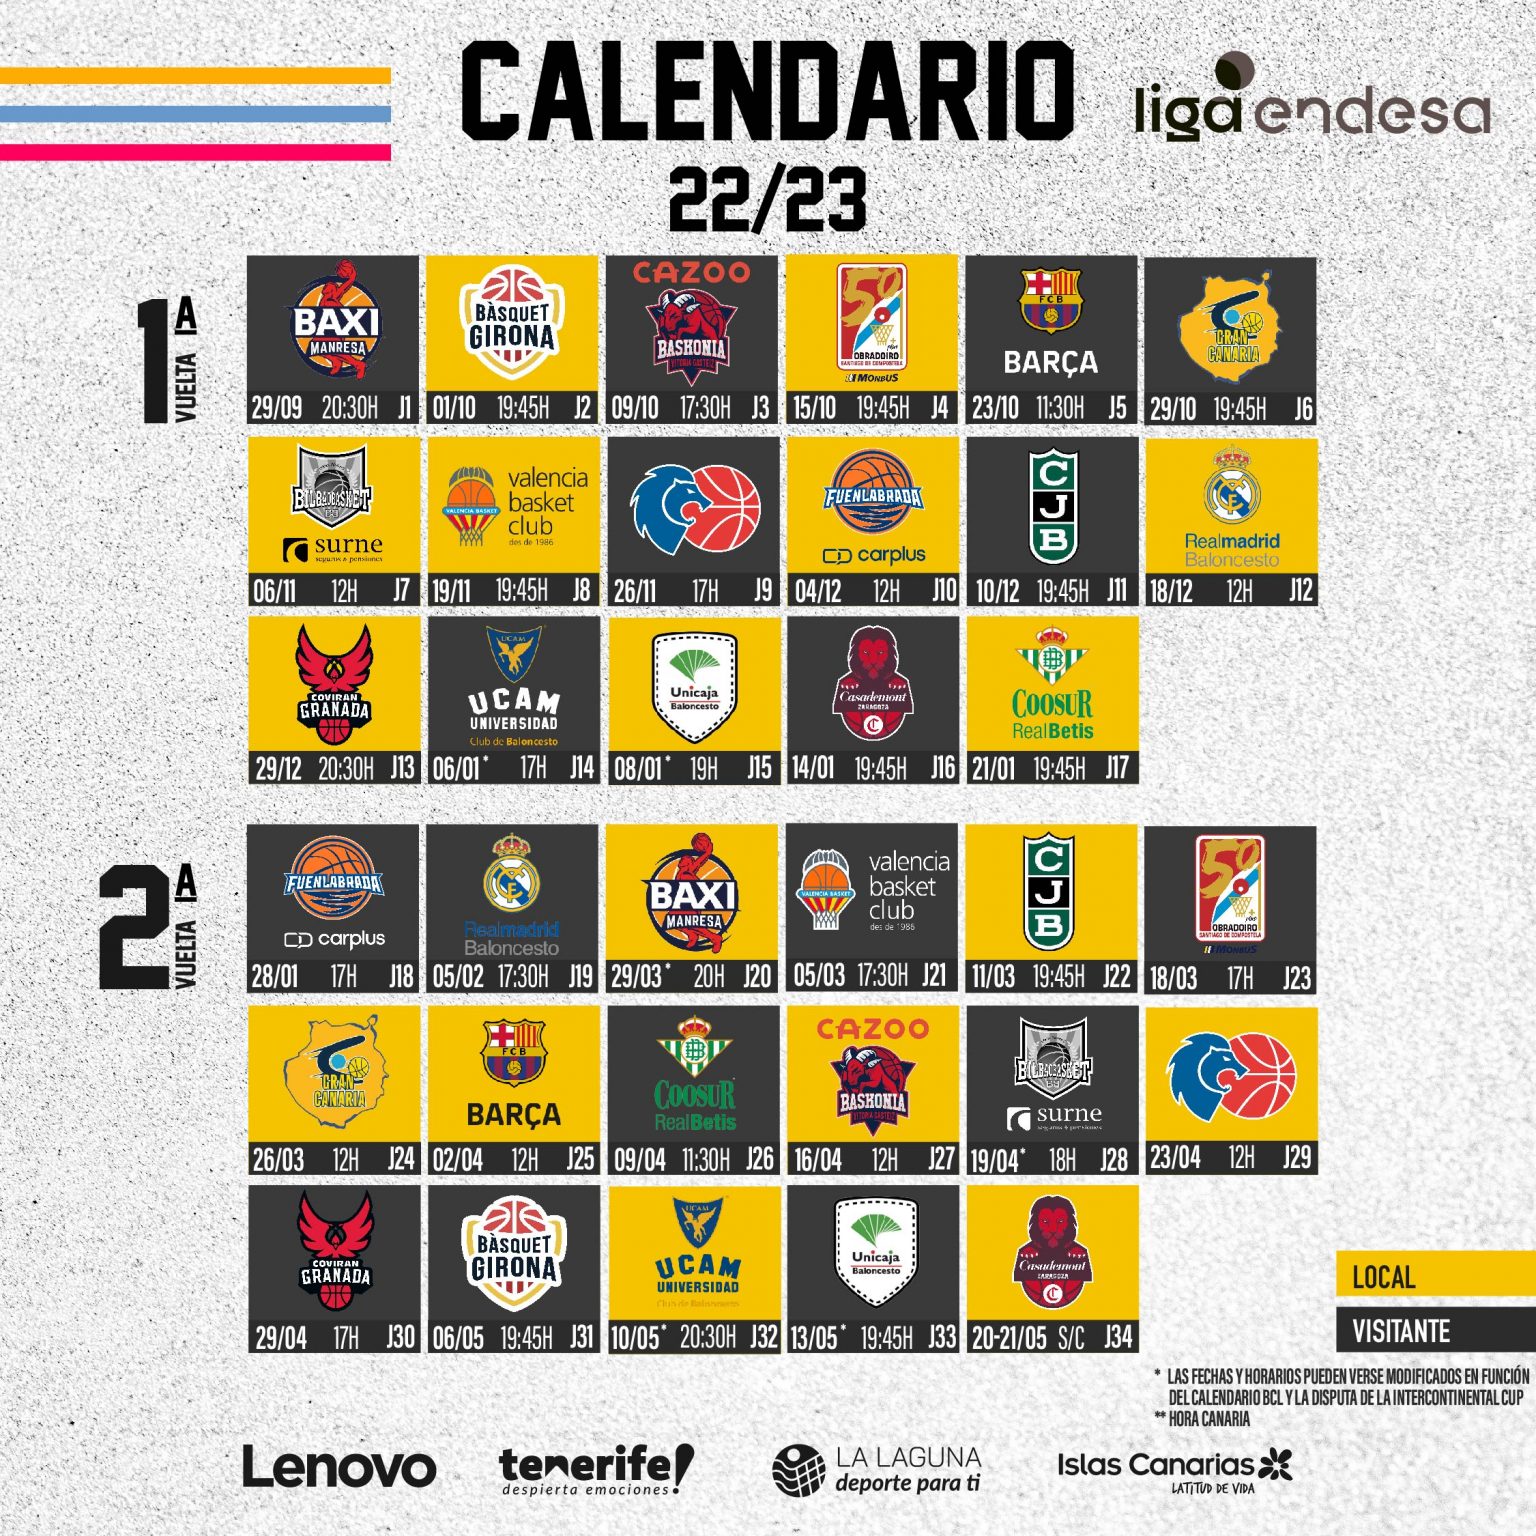 El Lenovo Tenerife ya conoce su calendario para la temporada 2022-23